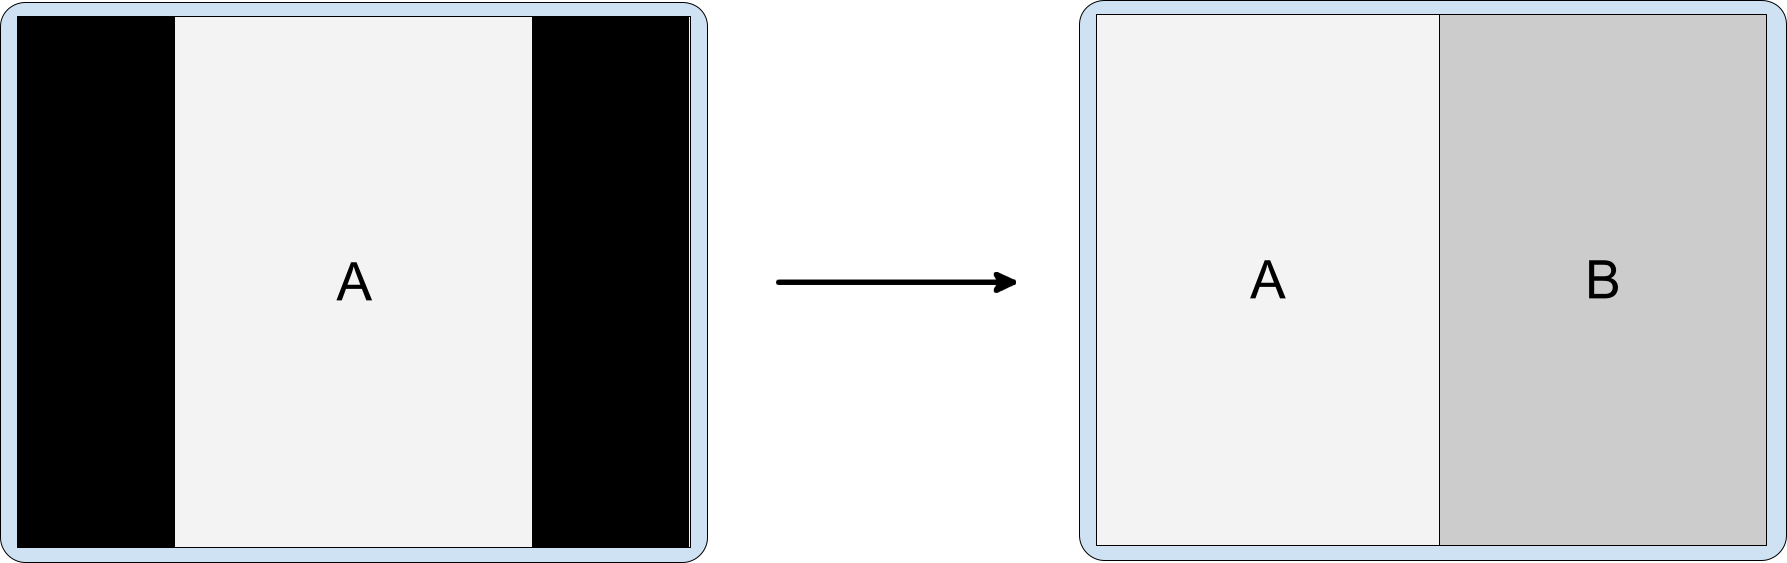 在橫向螢幕上對僅支援直向模式的應用程式使用活動嵌入功能。兩側有黑邊且僅支援直向模式的活動 A 會啟動嵌入活動 B。